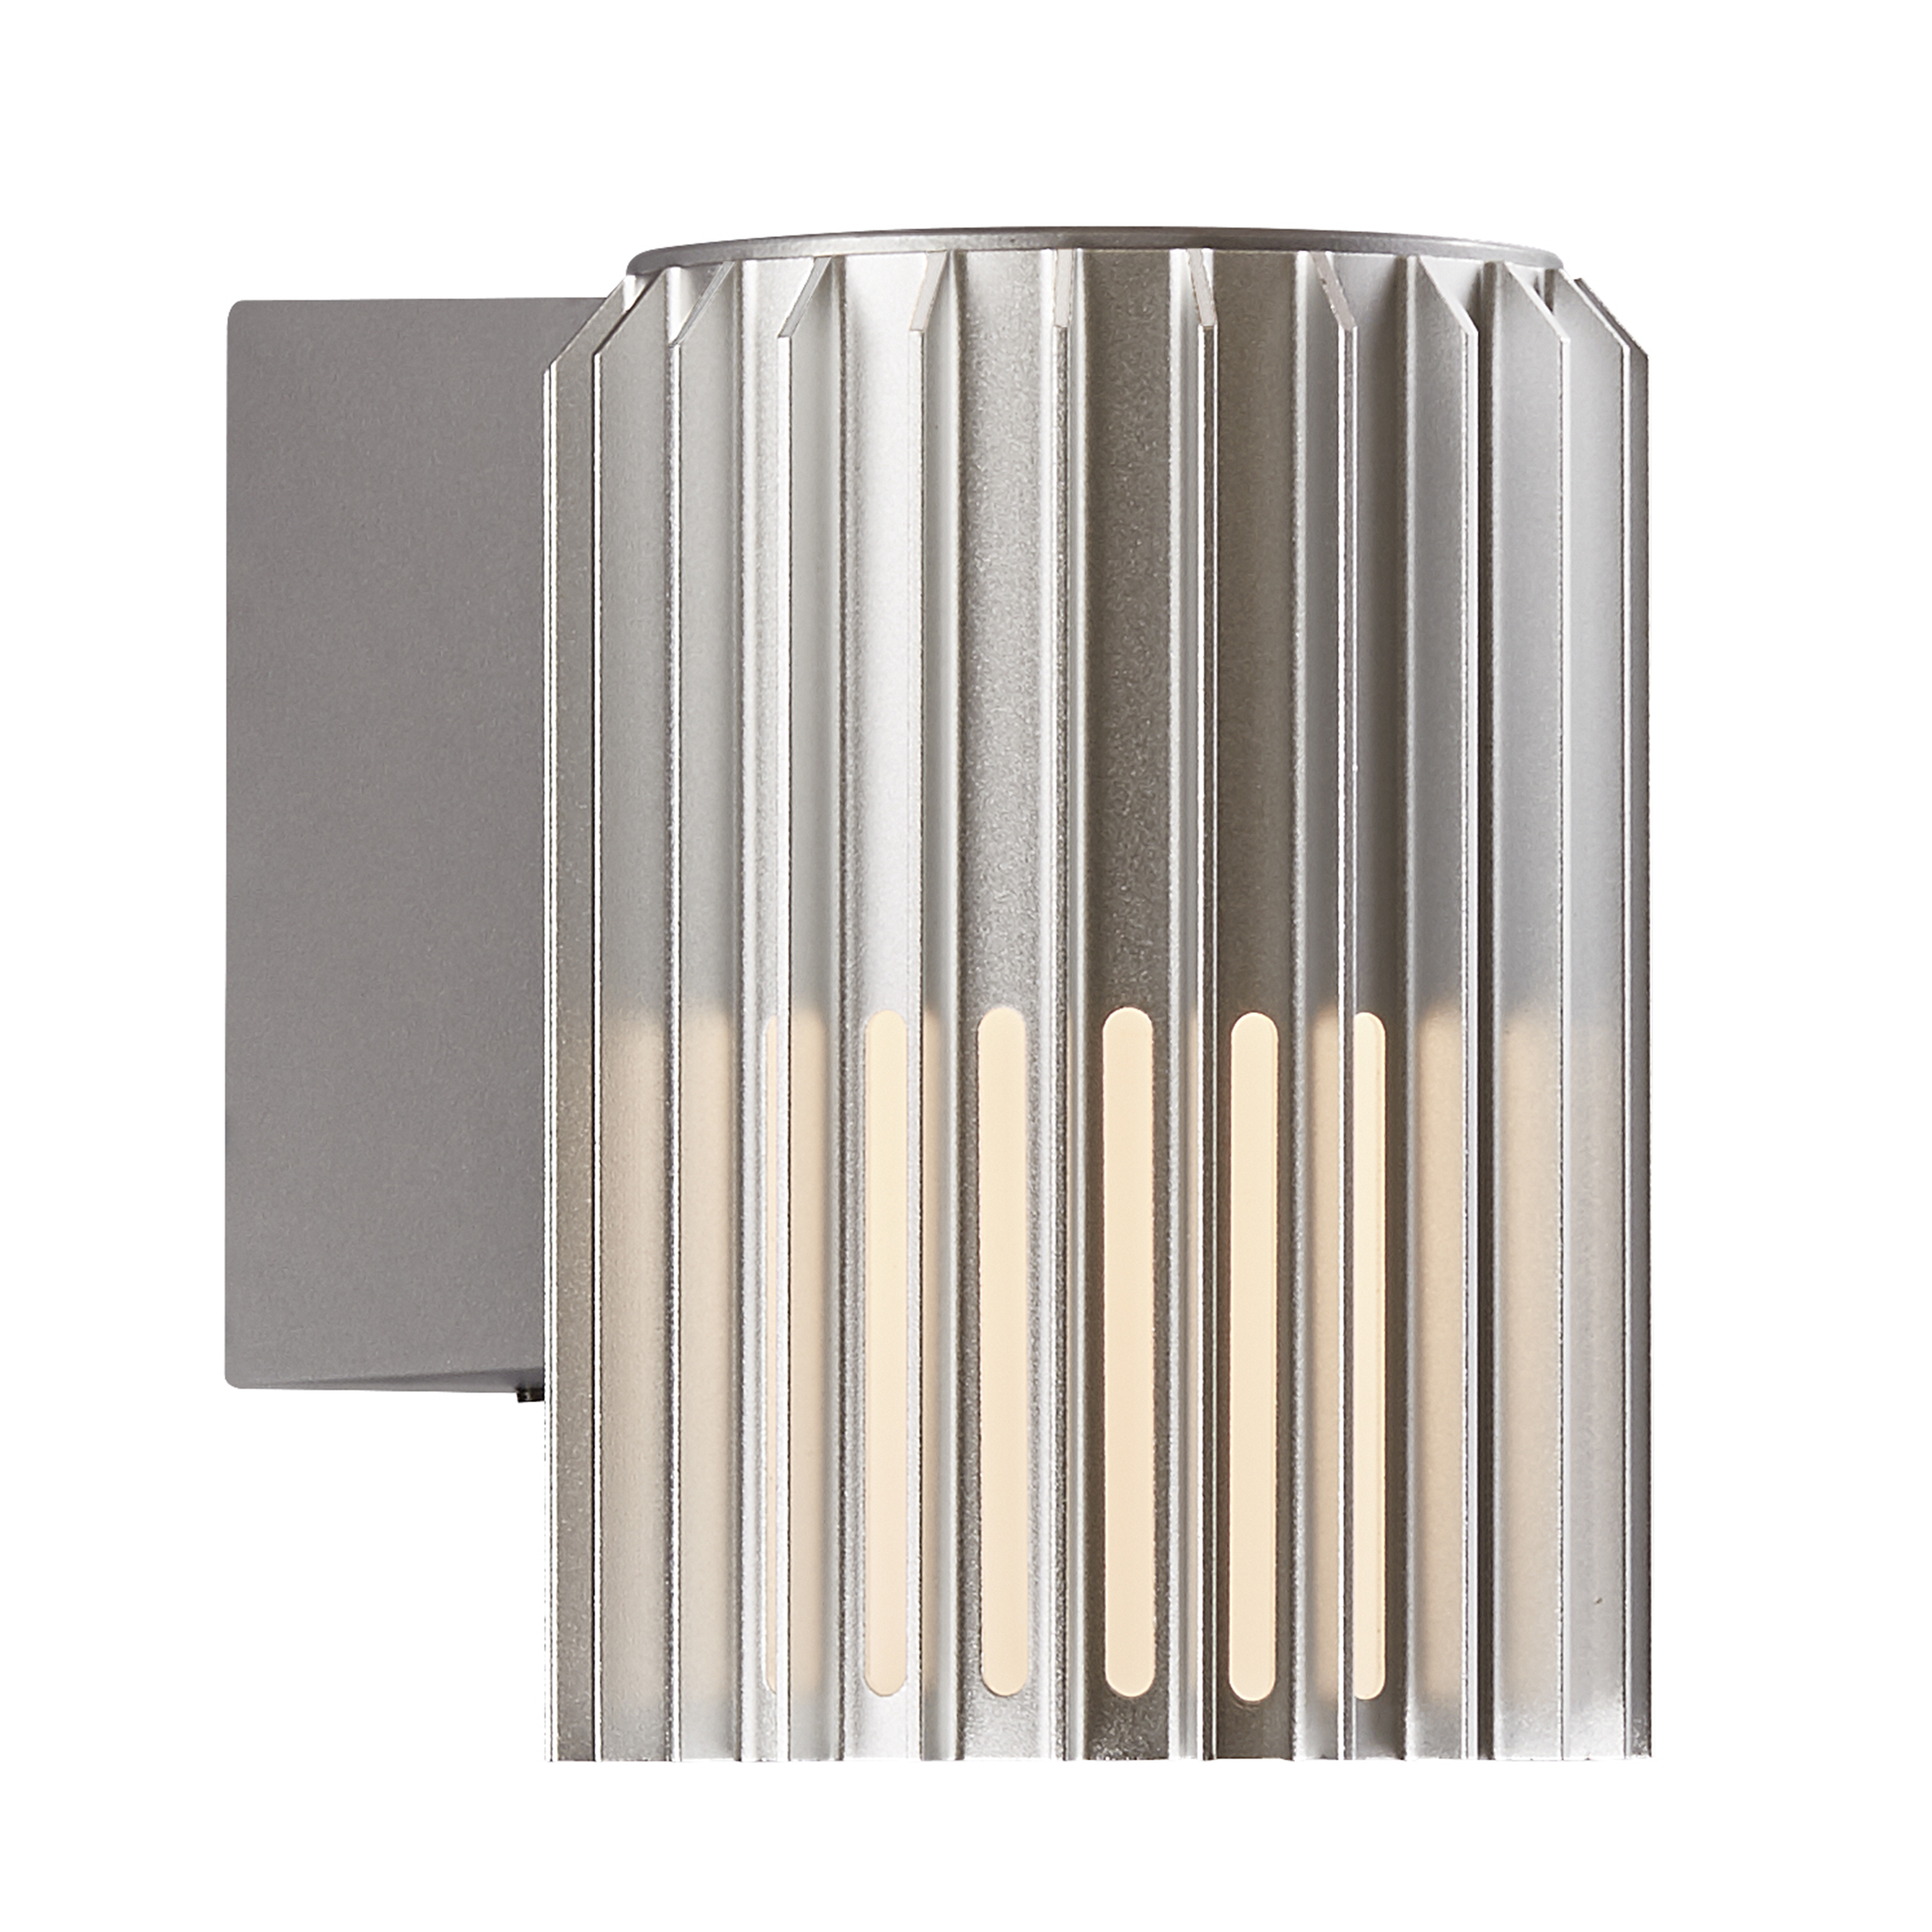 Aludra | Wall light | Aluminium